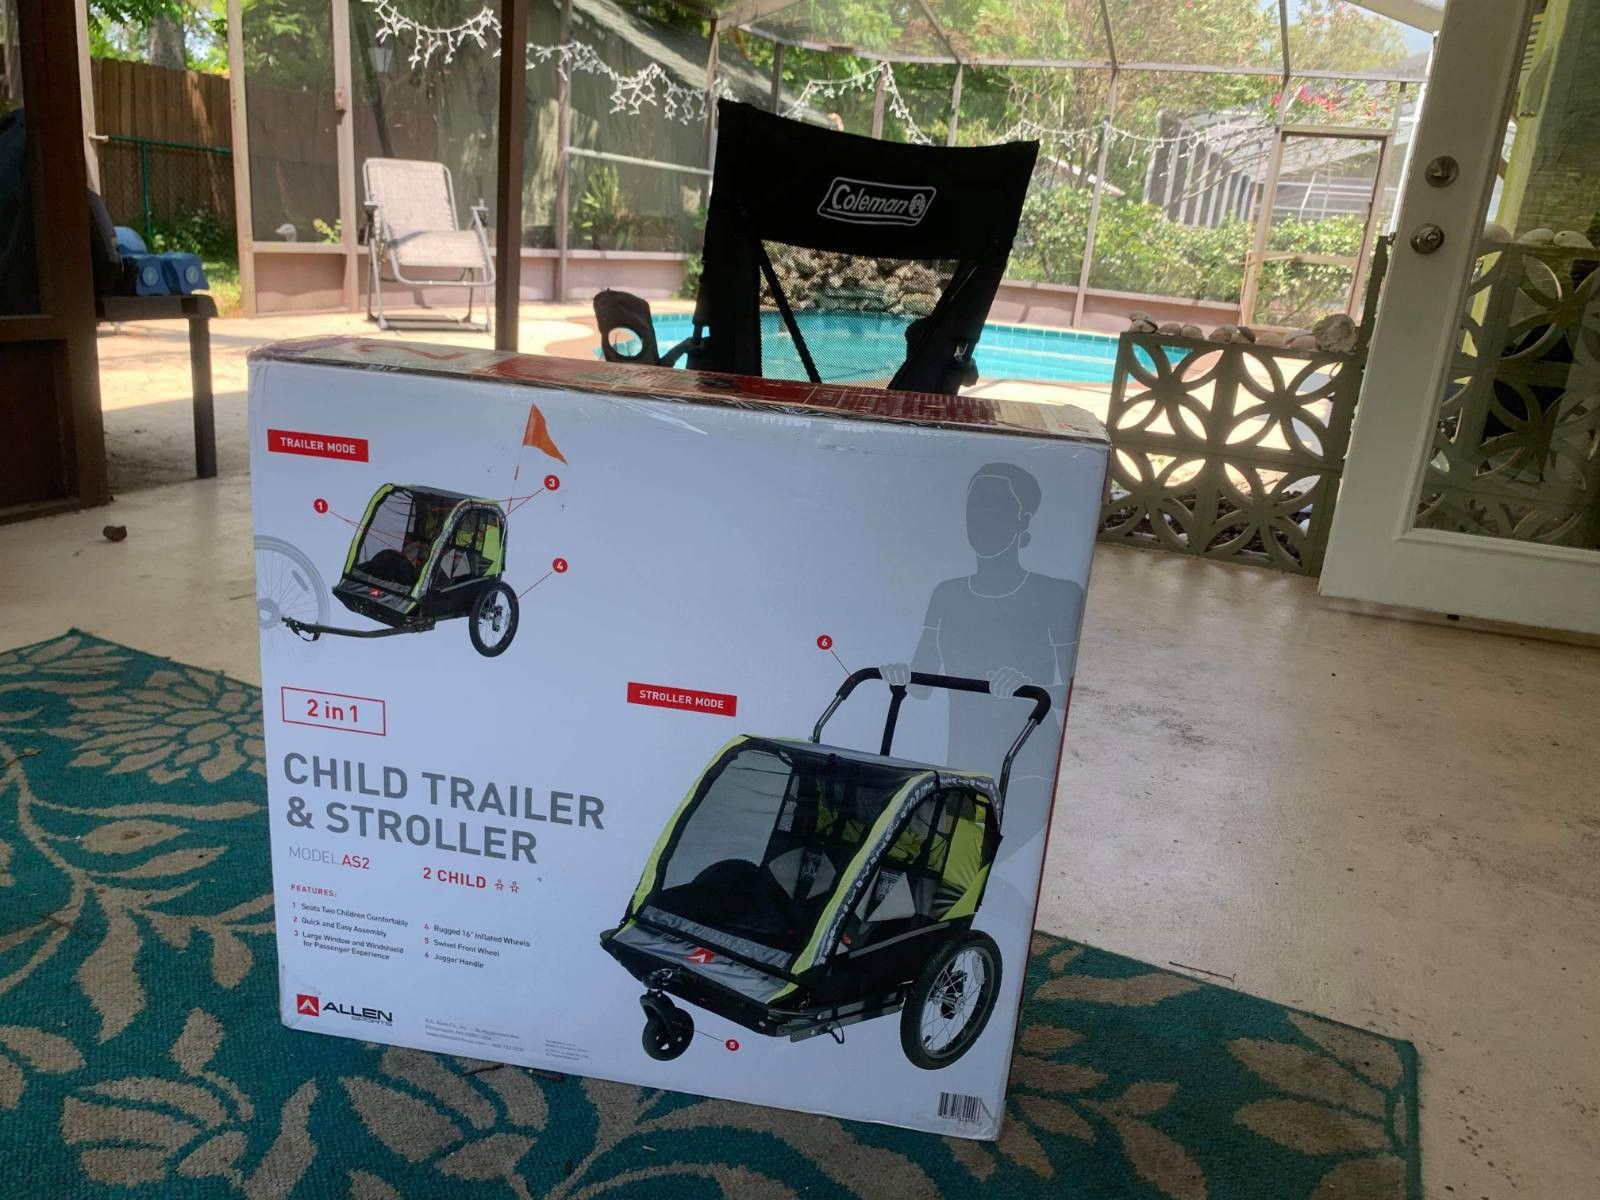 Shuttle bike child trailer stroller green 2 in 1 Brand new